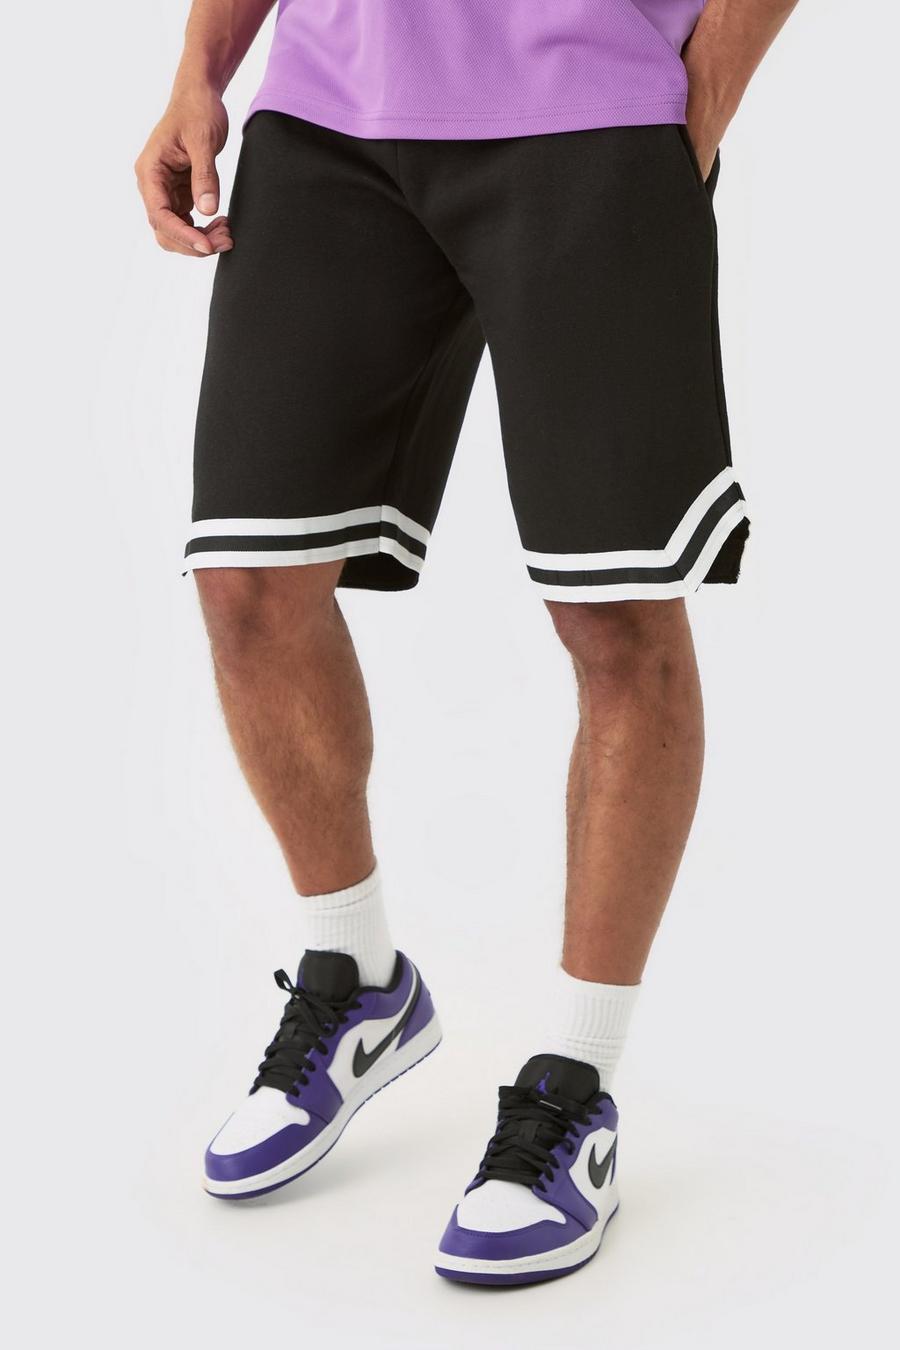 Pantaloncini da basket Tall in jersey con strisce sul fondo, Black nero